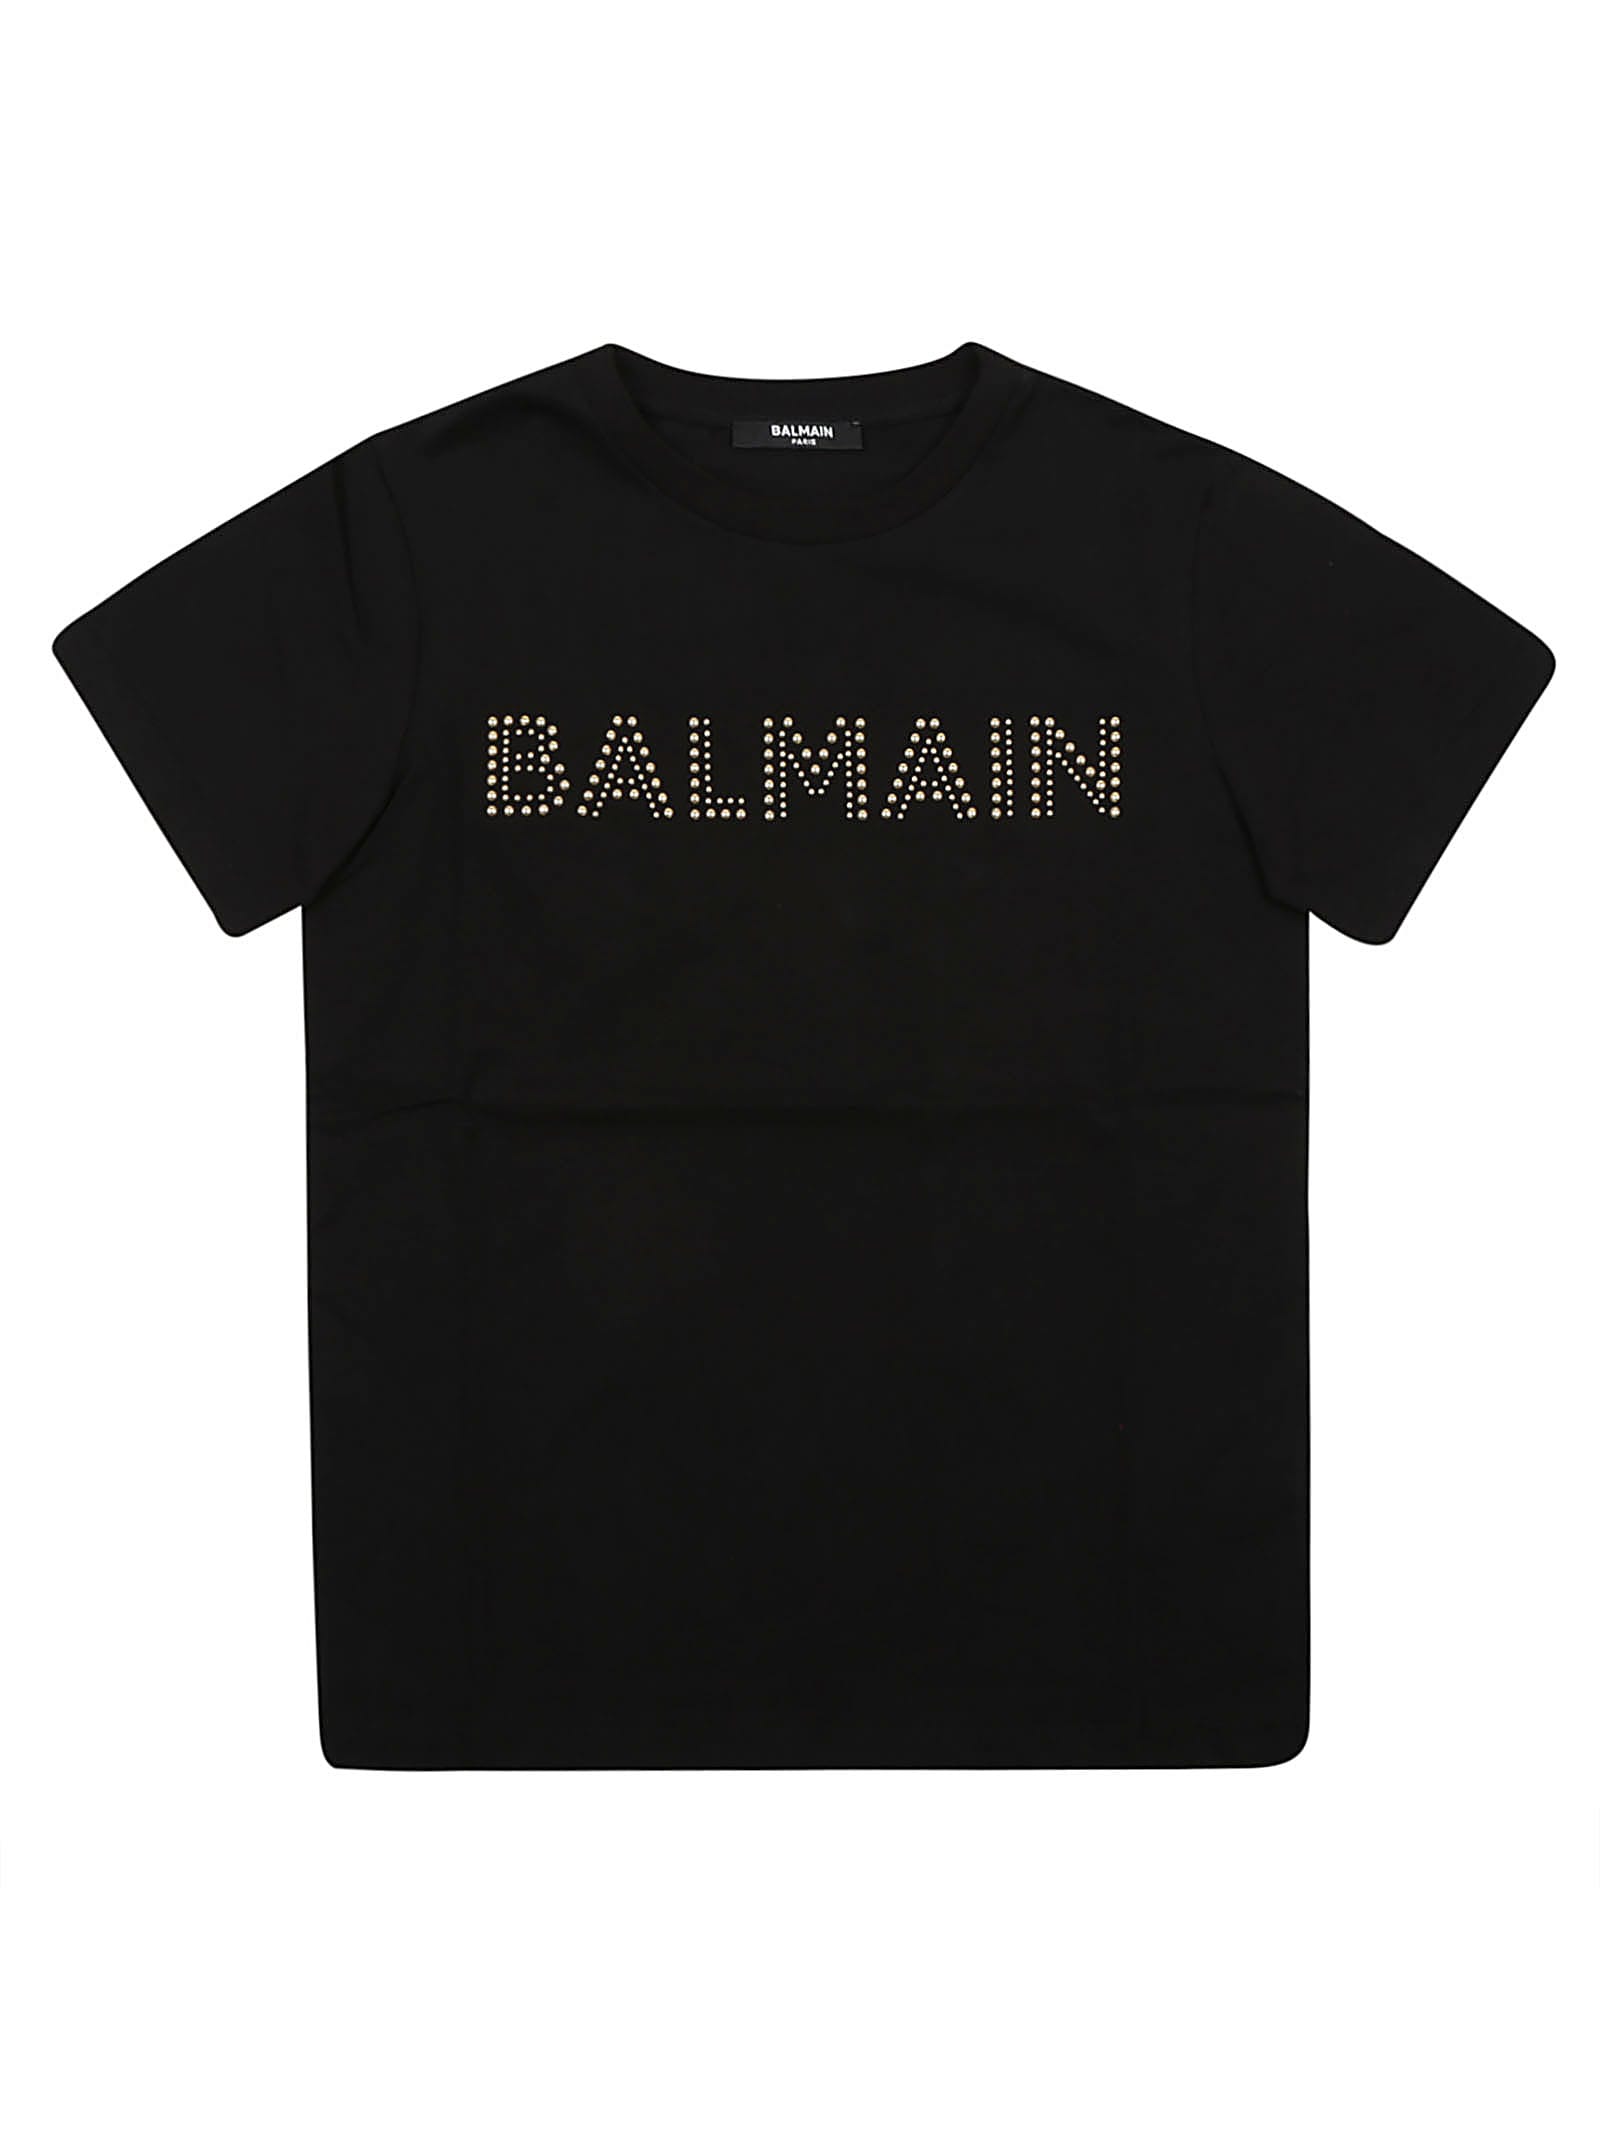 BALMAIN T-SHIRT/TOP